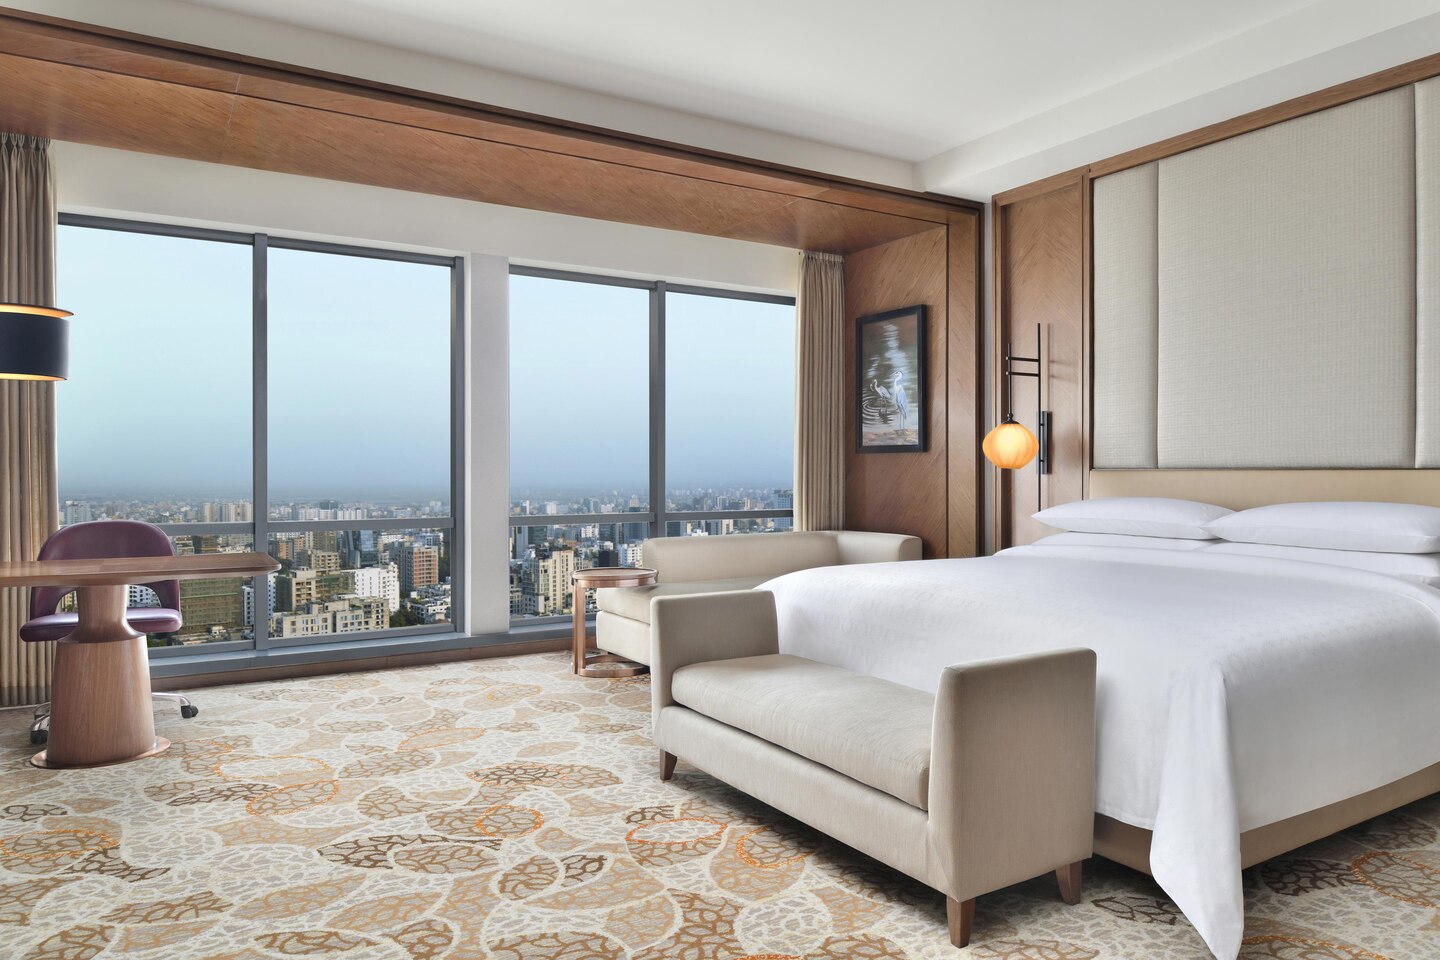 مشروع فندق الصين فندق كوين غرفة نوم مصنع تصميم حديث أثاث فندق جذاب